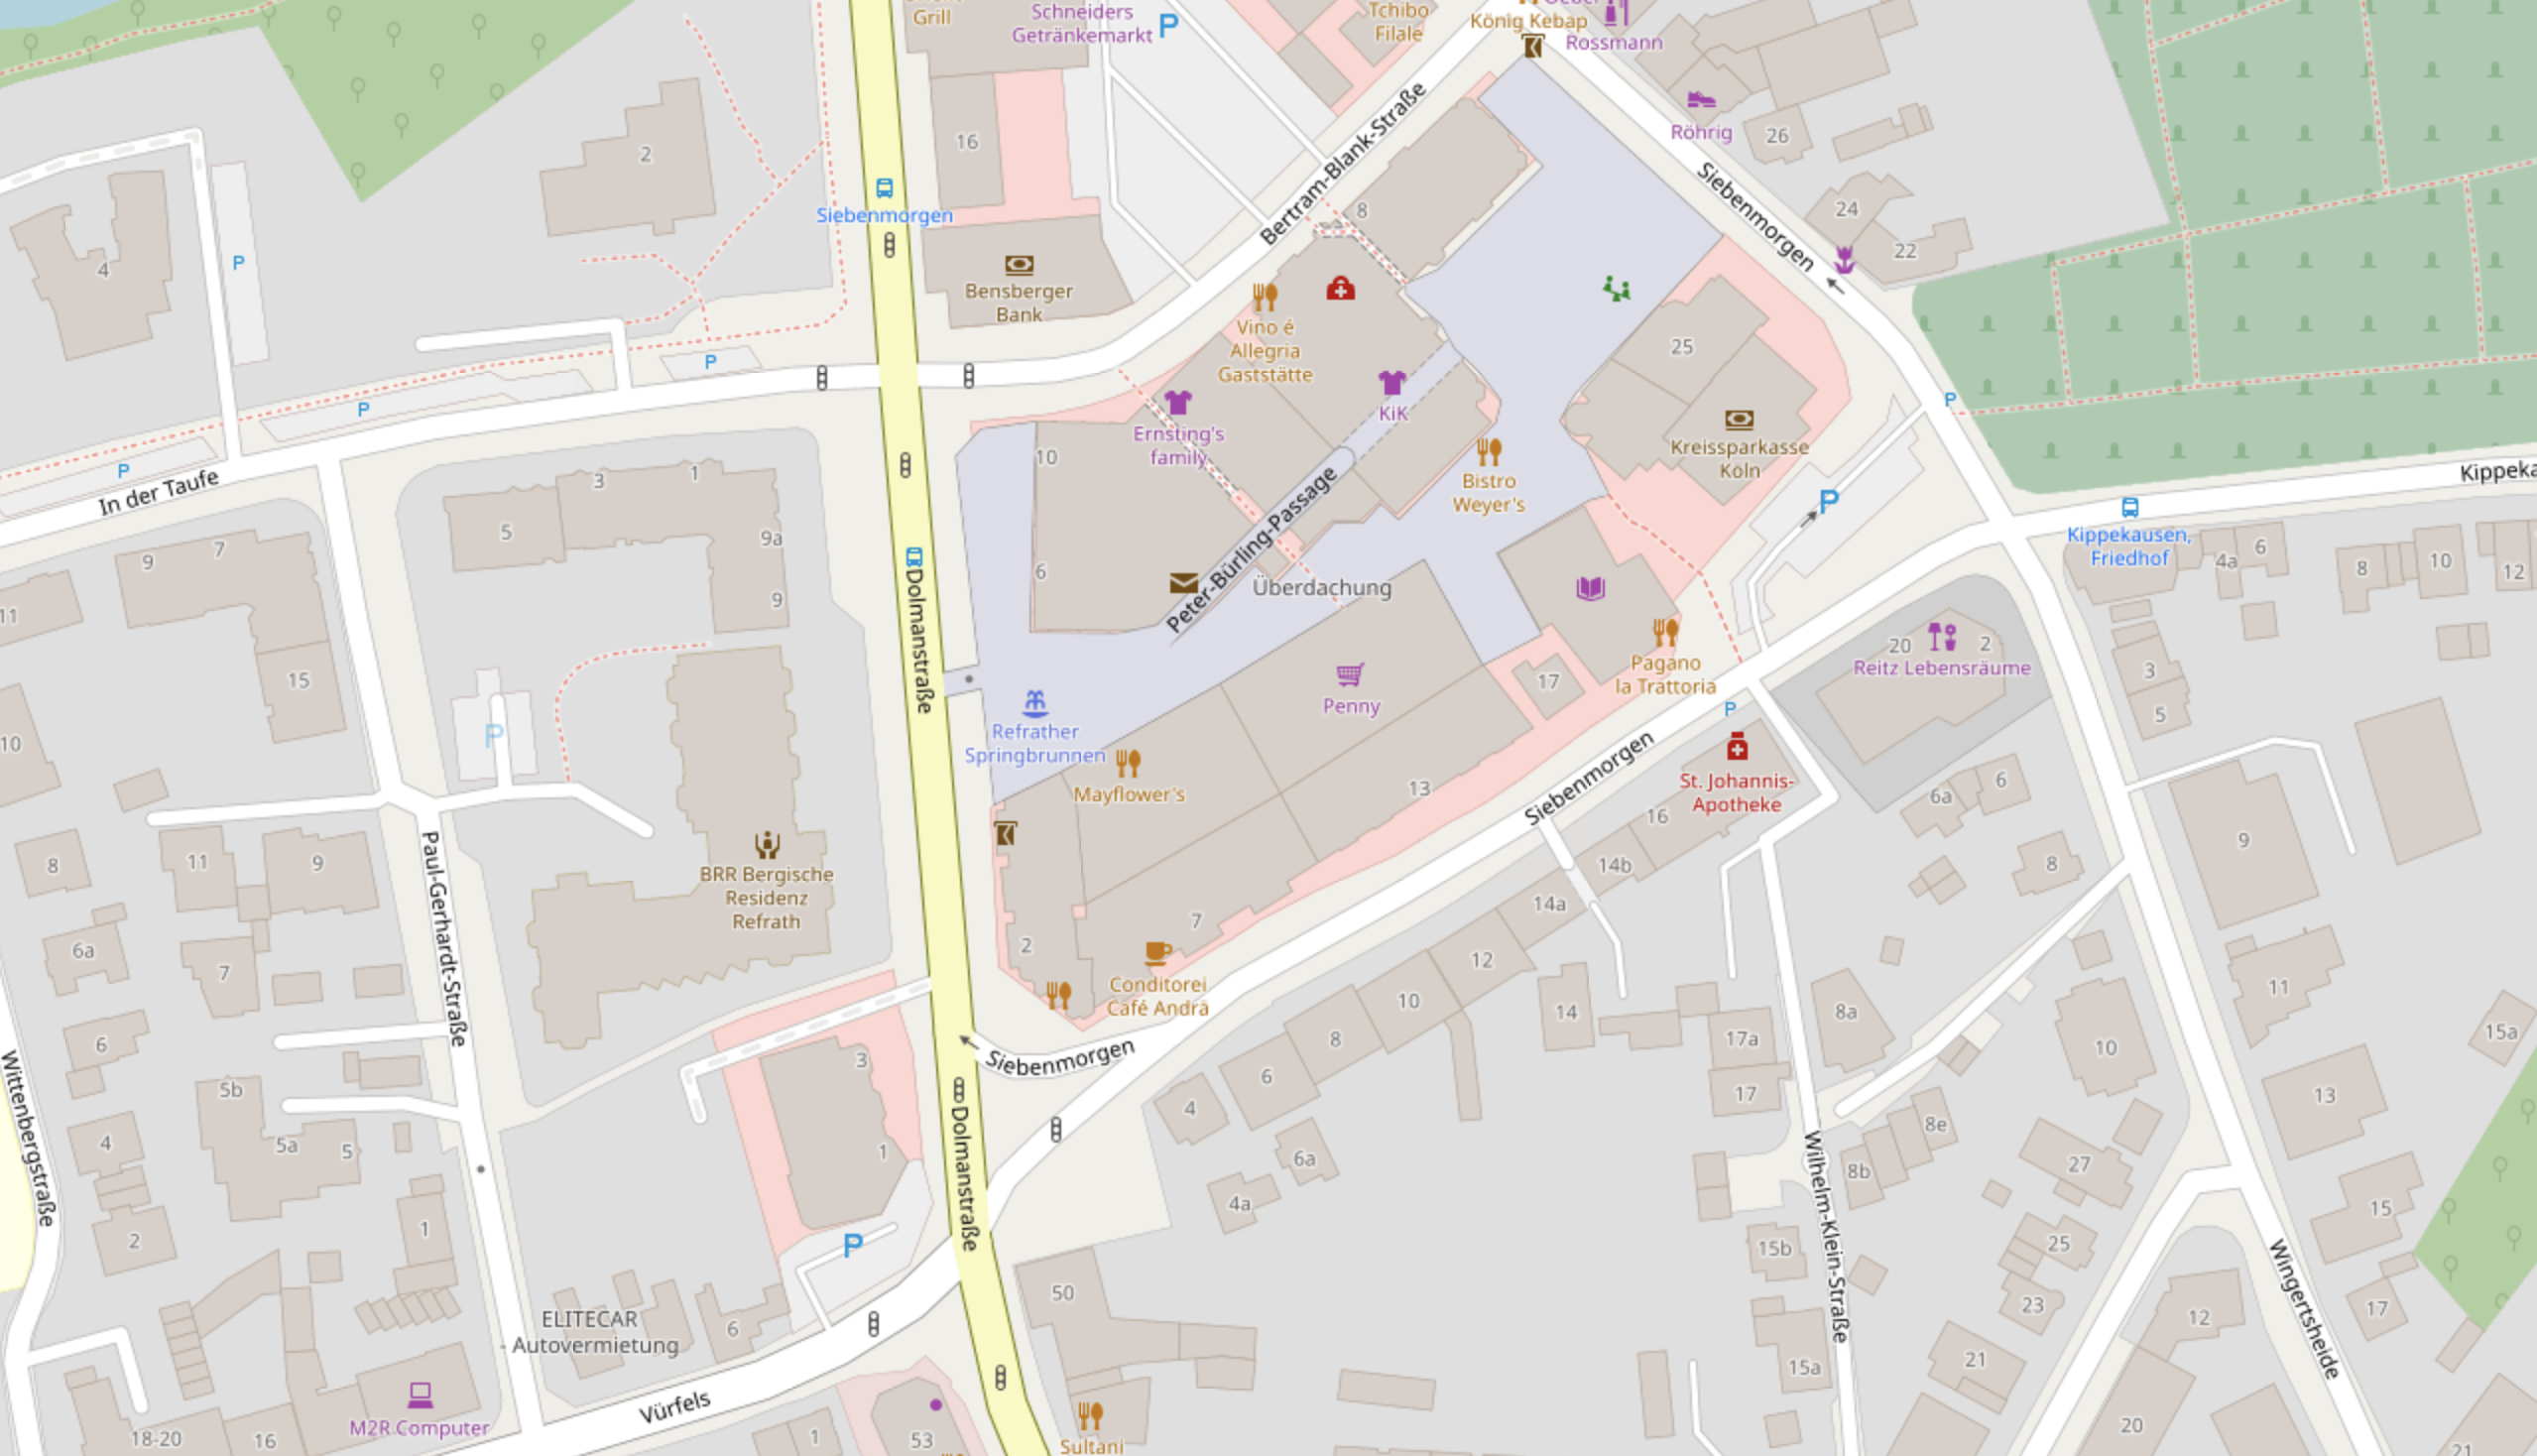 Karte von Refrath - © OpenStreetMap